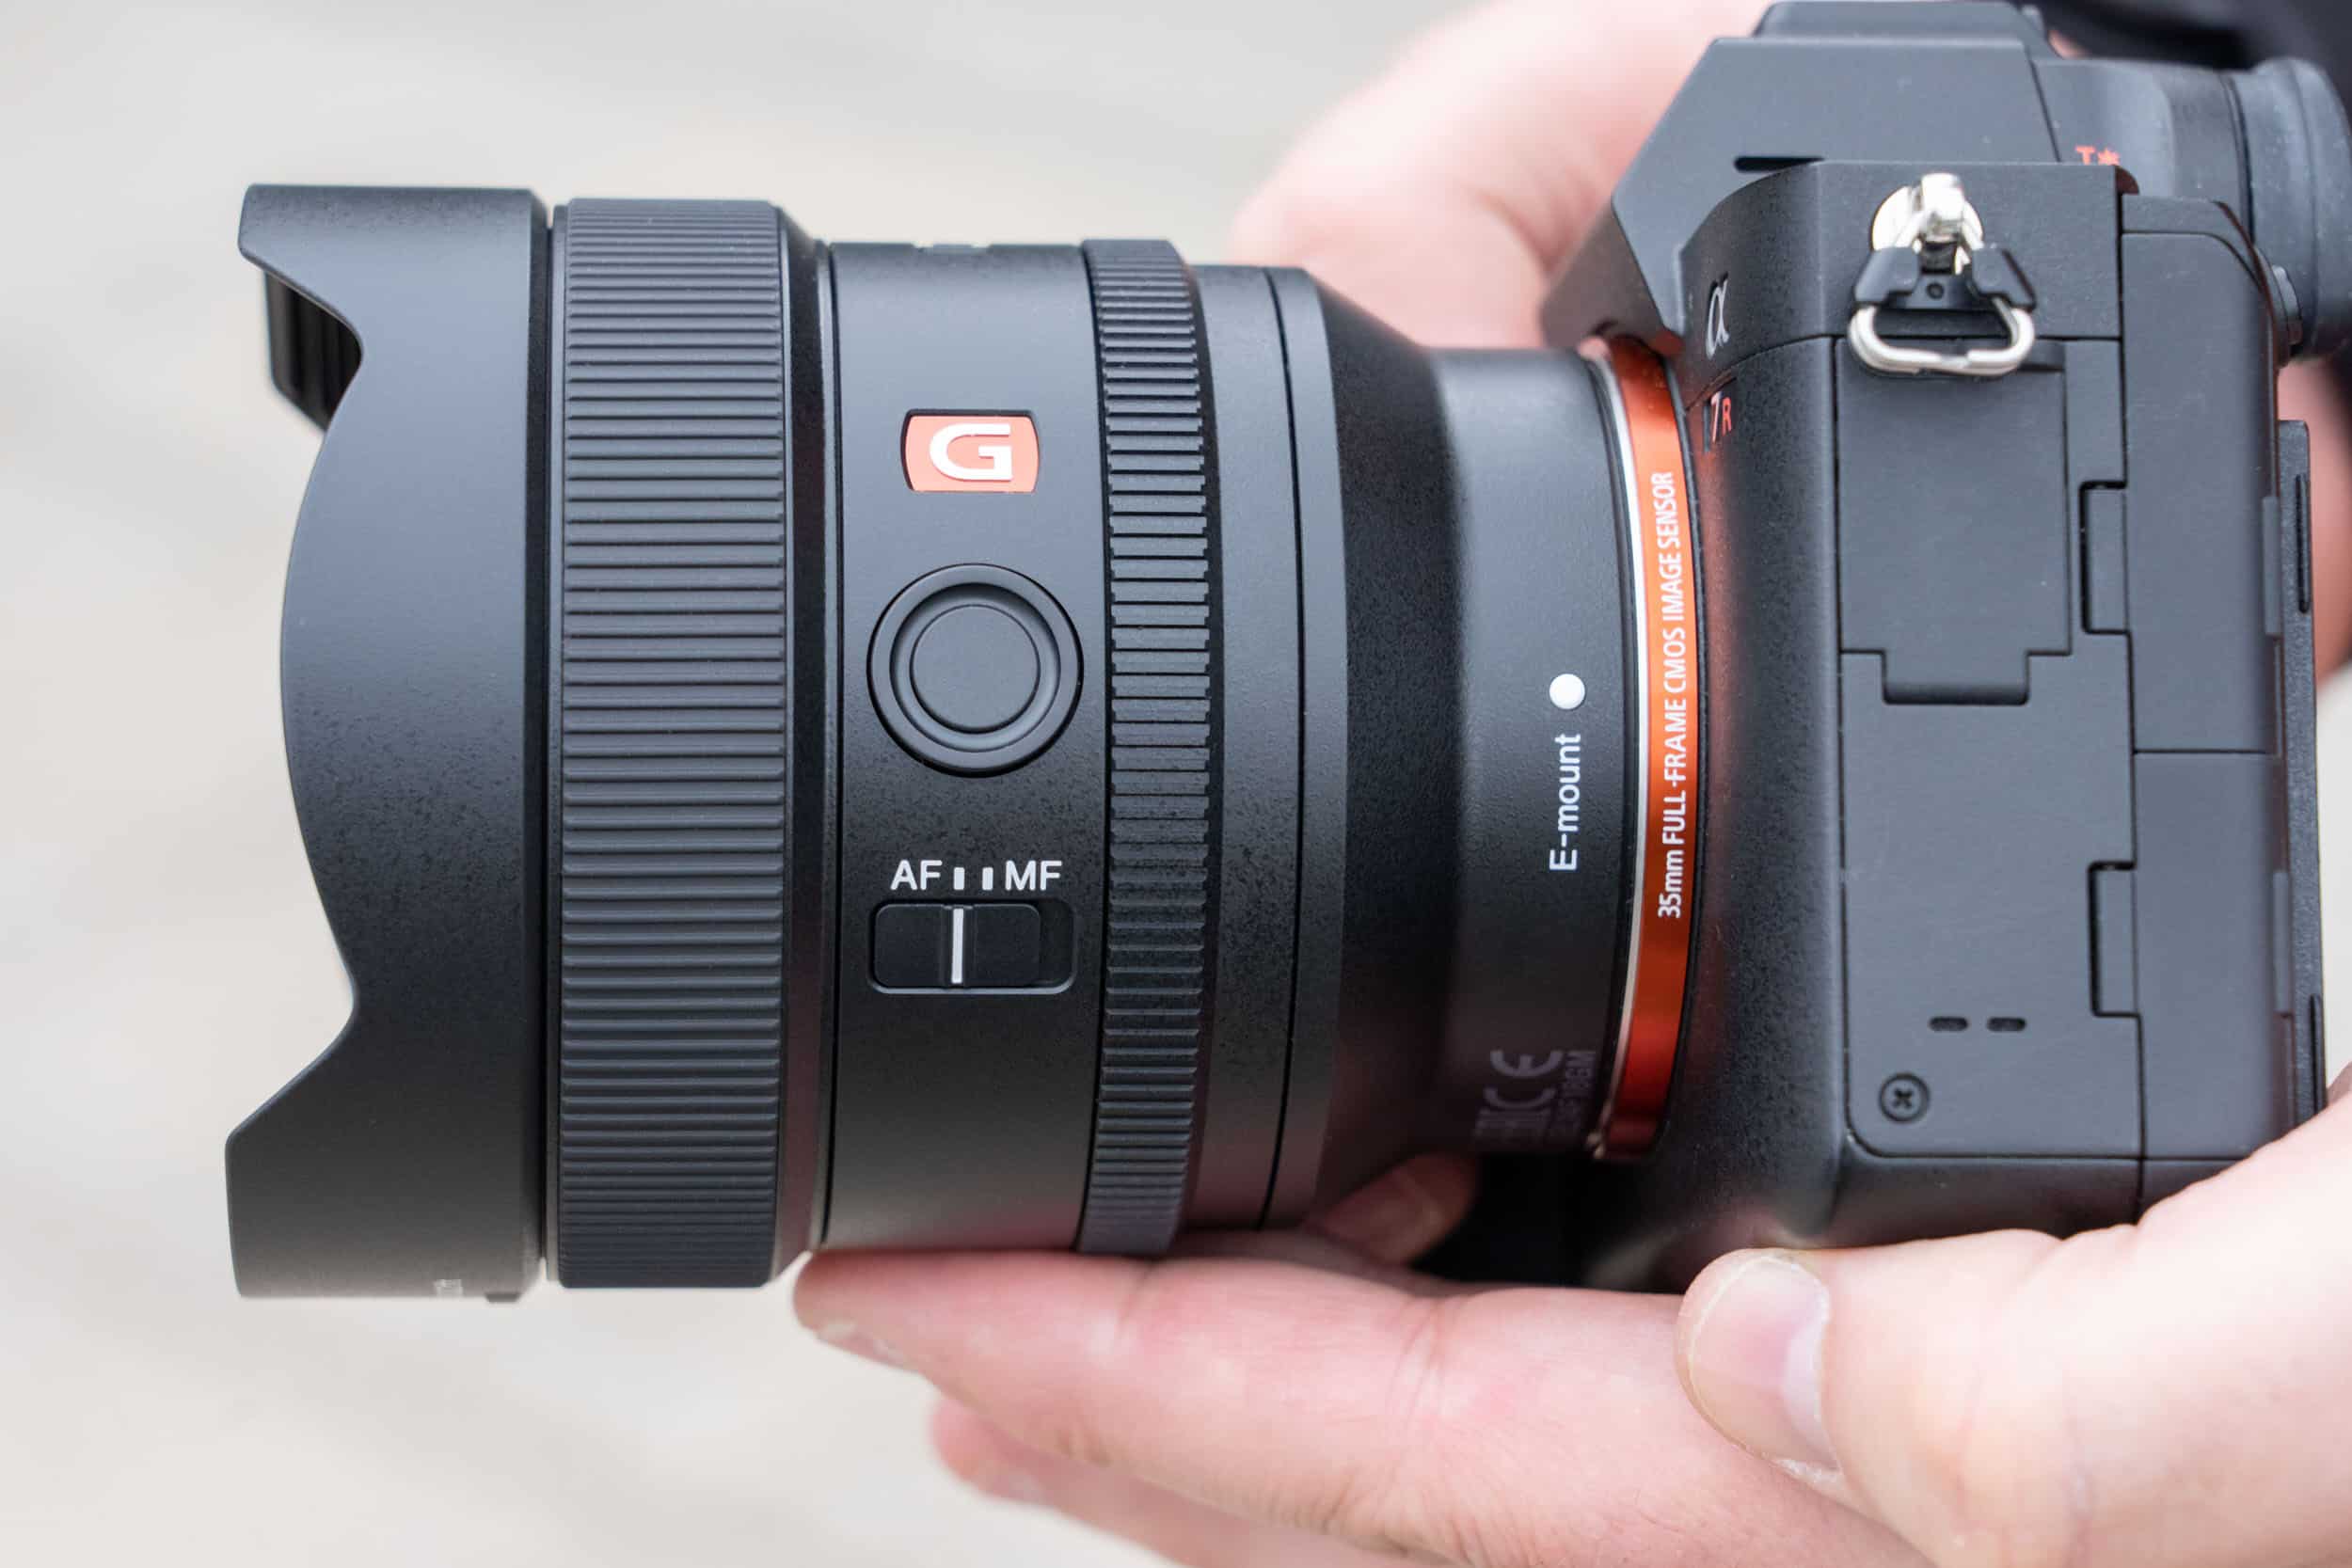 Ống kính góc siêu rộng Sony FE 14mm F1.8 GM ra mắt, nhẹ hơn nhiều so với phiên bản từ Sigma